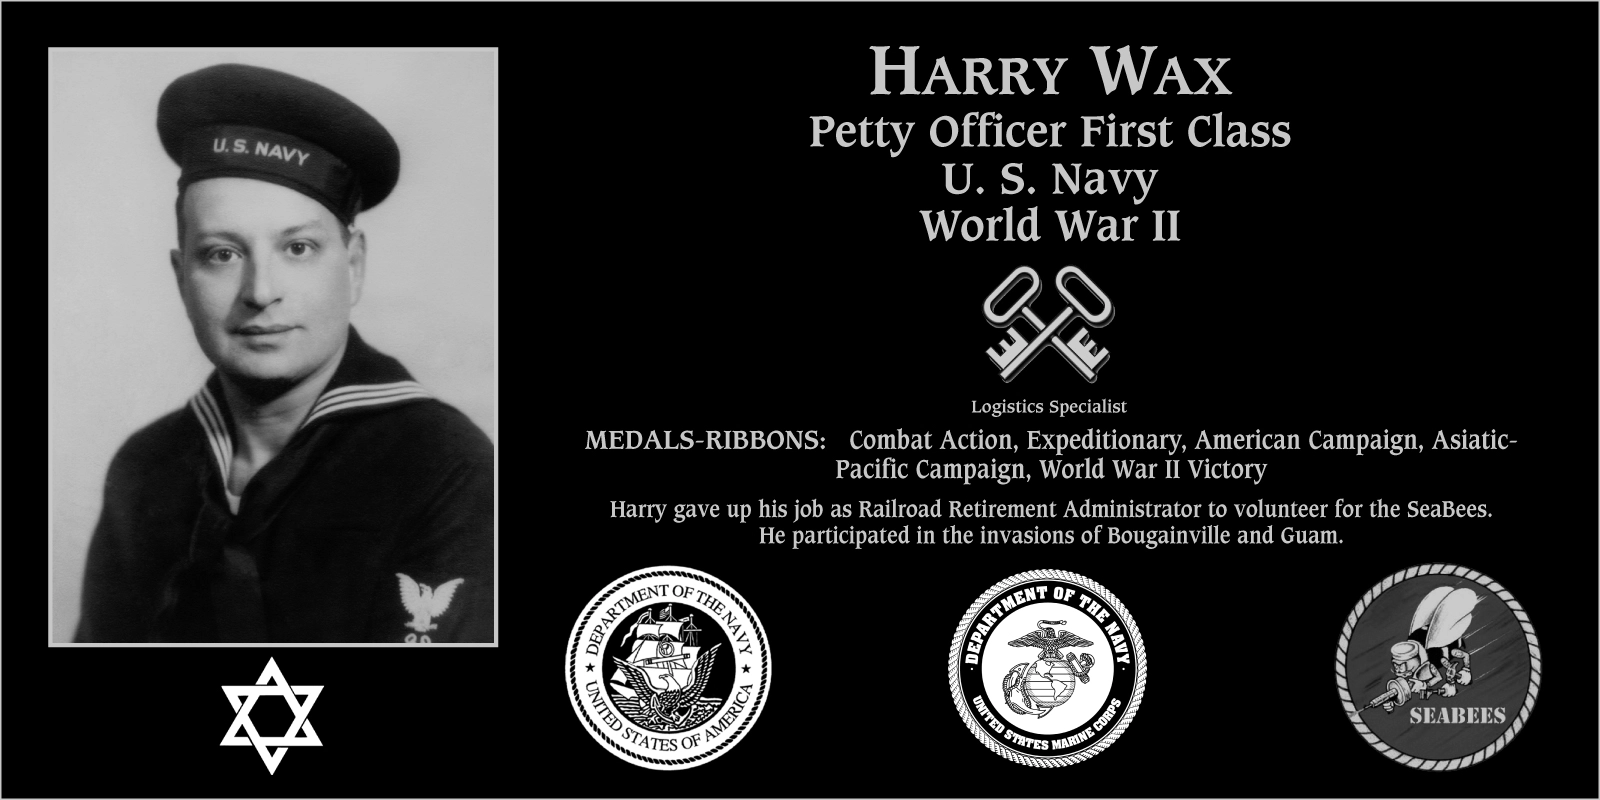 Harry Wax